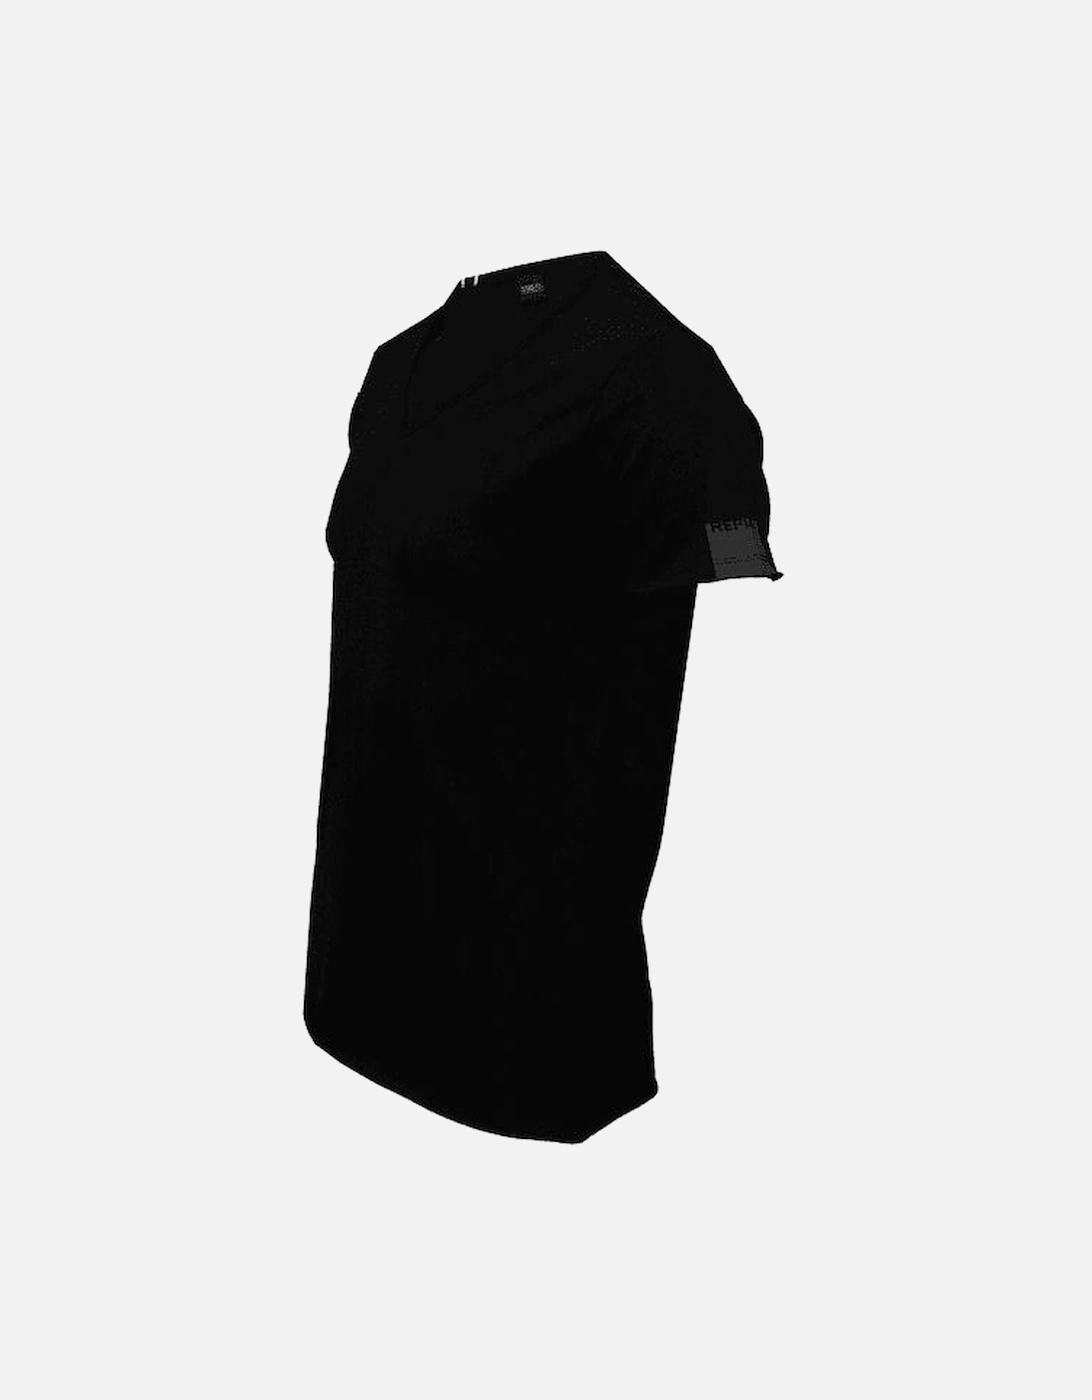 Luxe V-Neck T-Shirt, Black